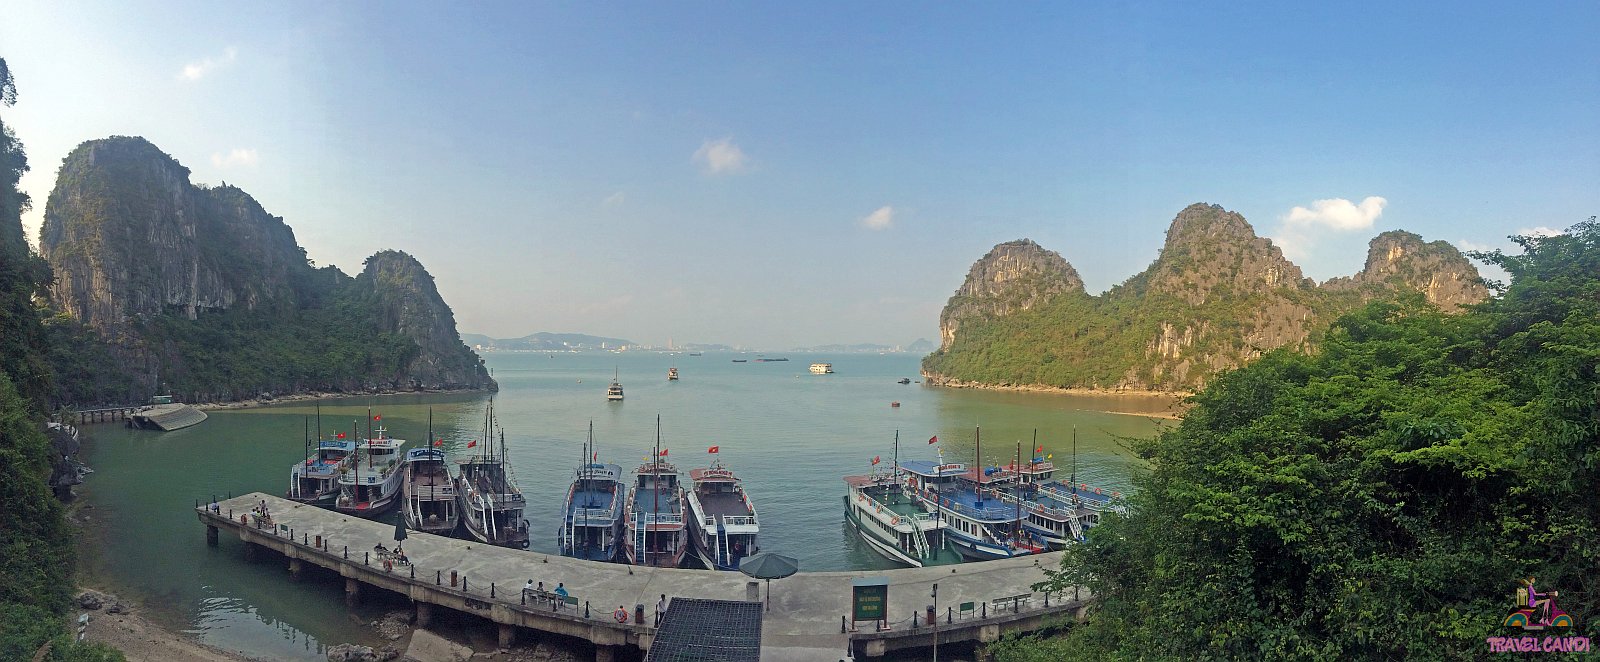 Ha Long Bay Boats